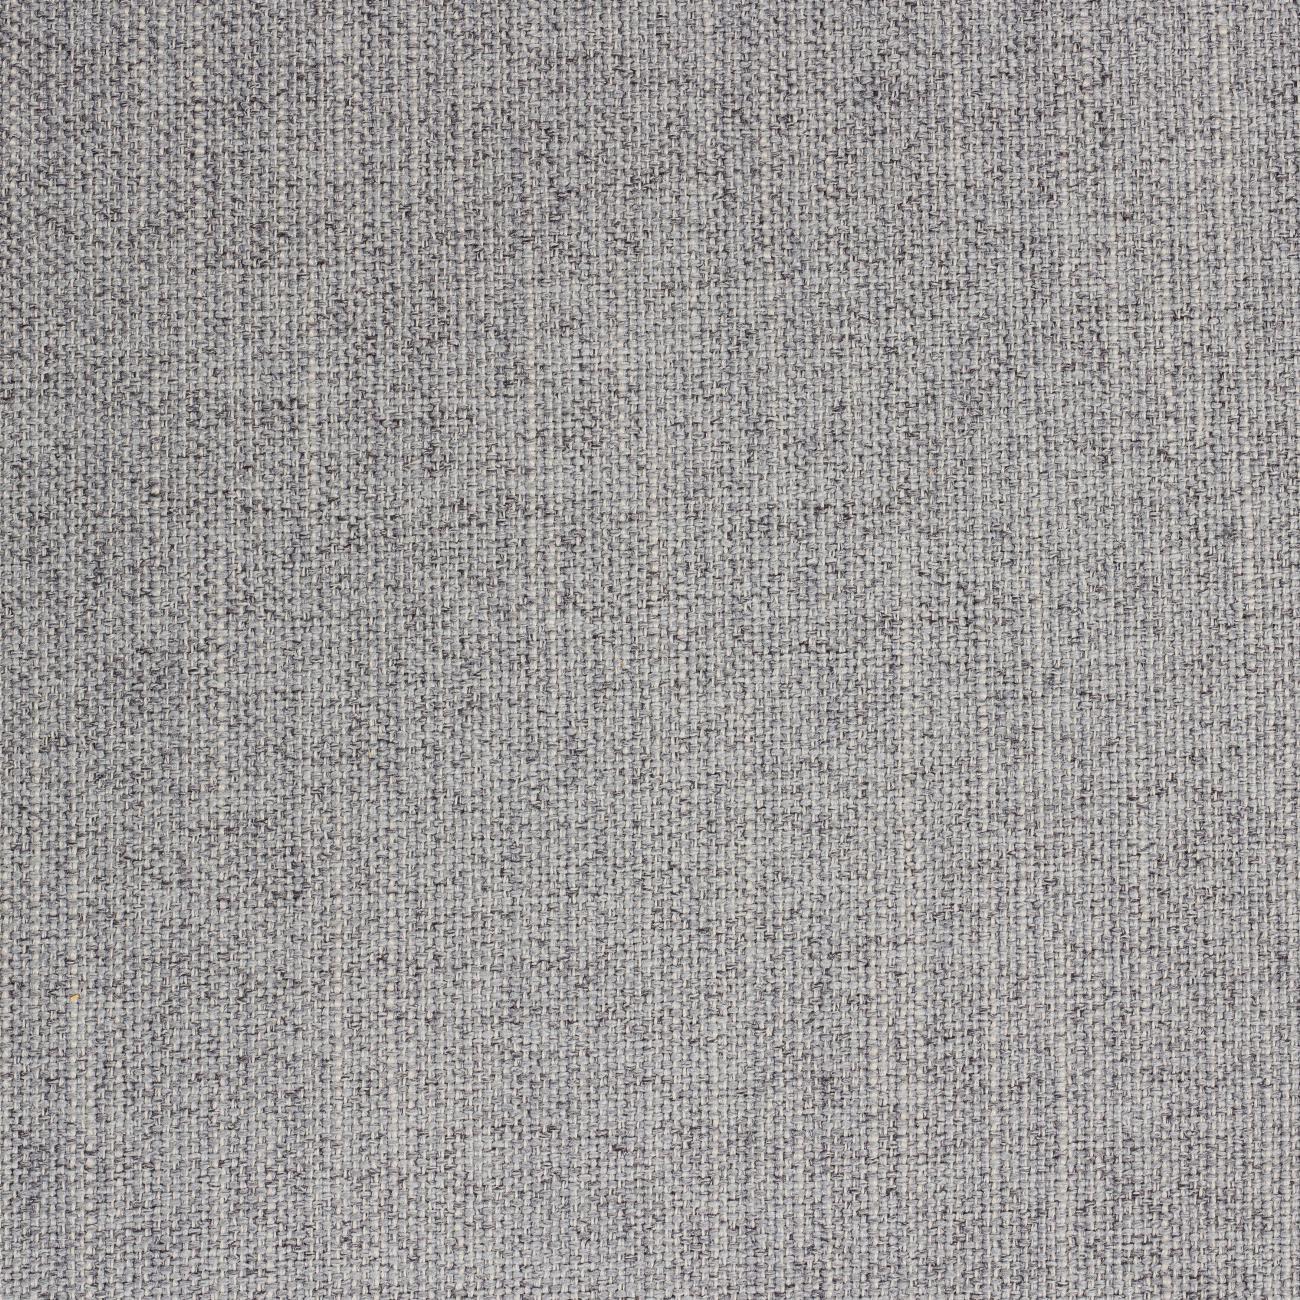 Larvik Chaiselongue Sofa  (LH) - Grey, Oak Legs